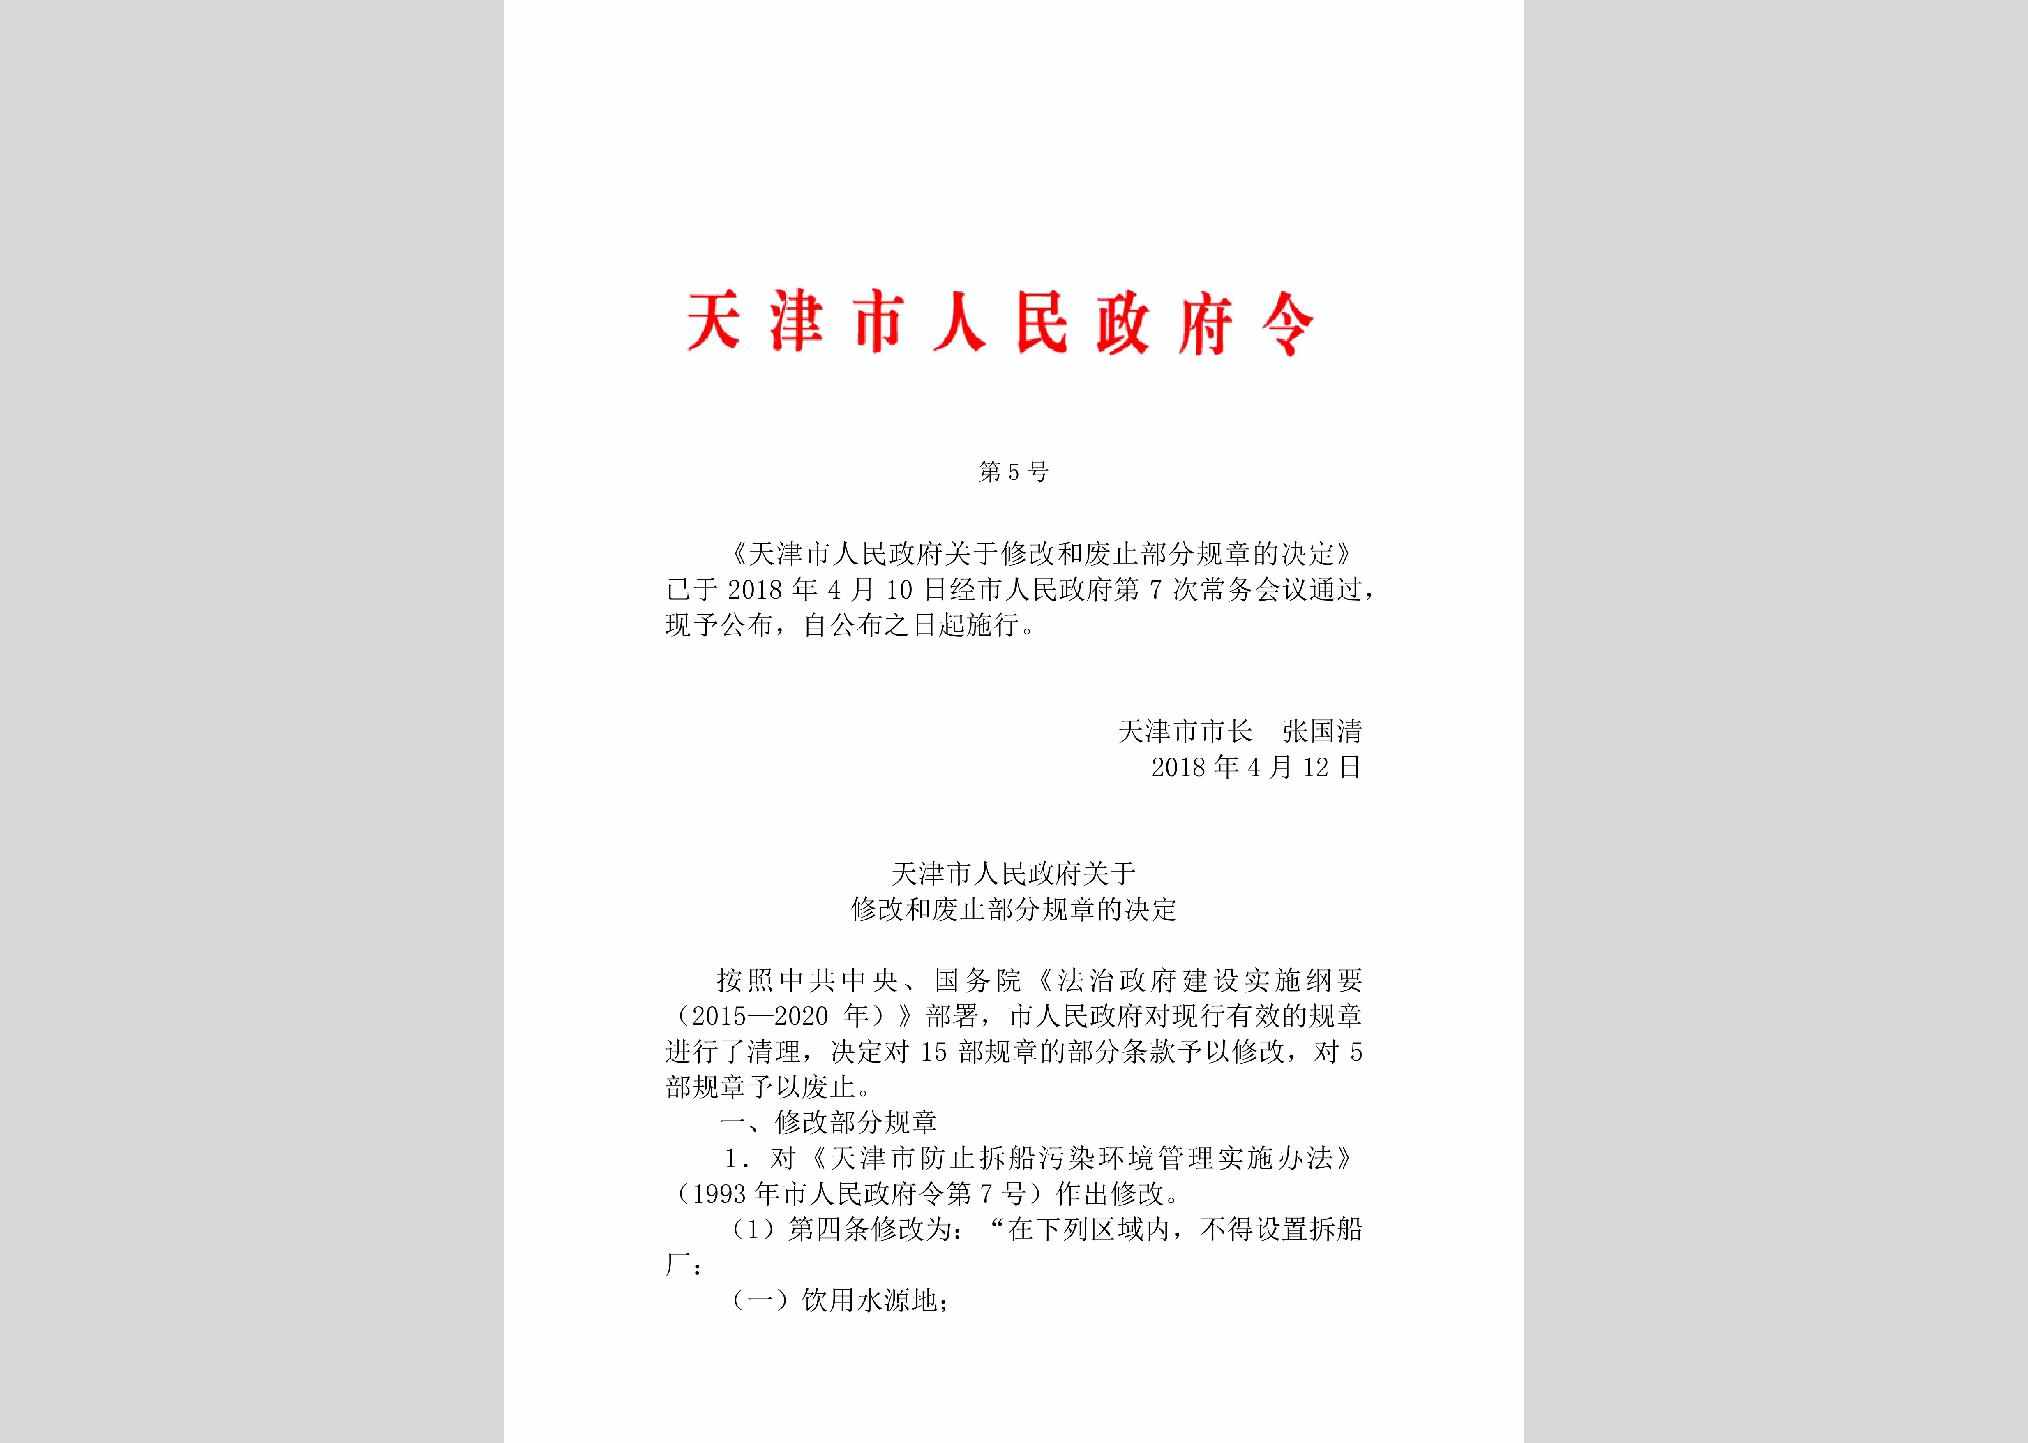 天津市人民政府令第5号：天津市人民政府关于修改和废止部分规章的决定